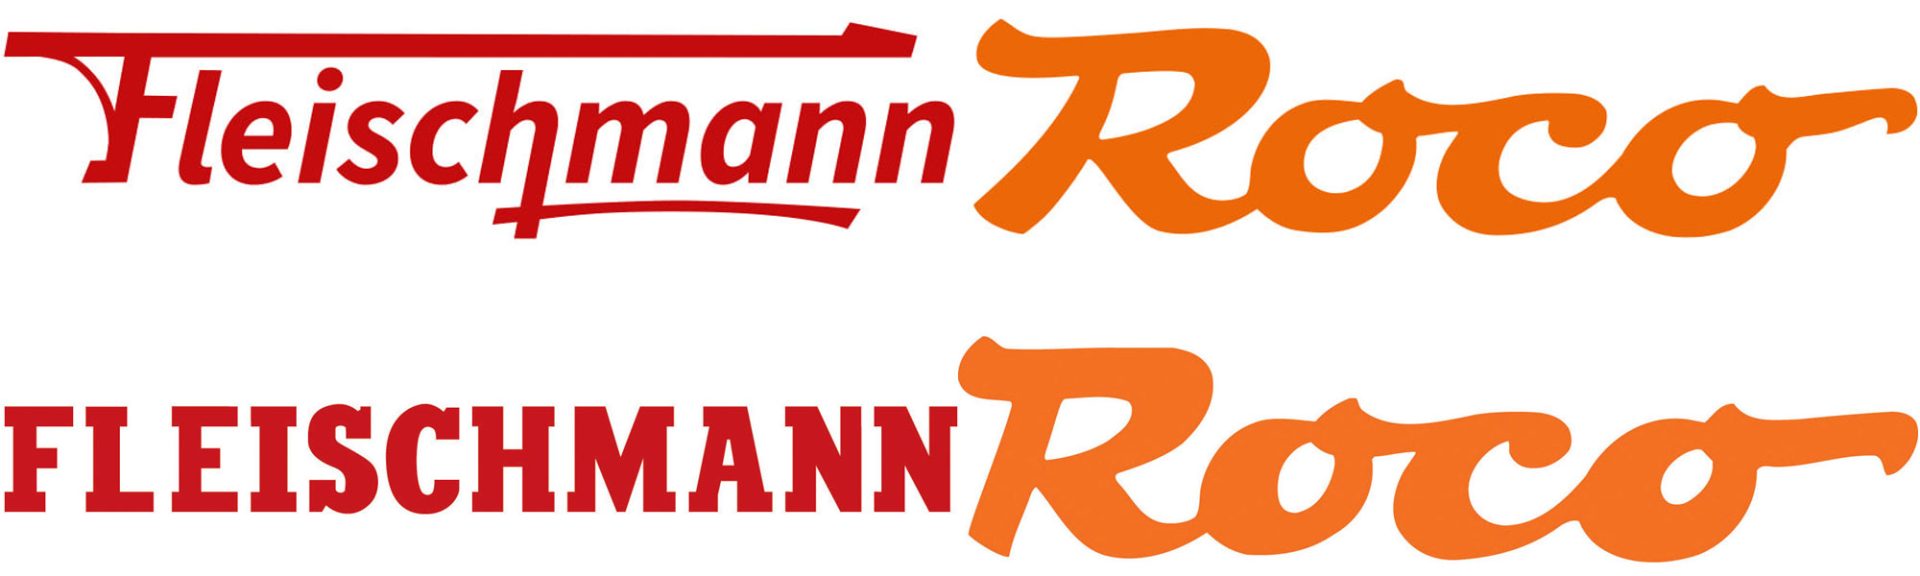 Neue alte Logos Roco Fleischmann_Modelleisenbahn GmbH